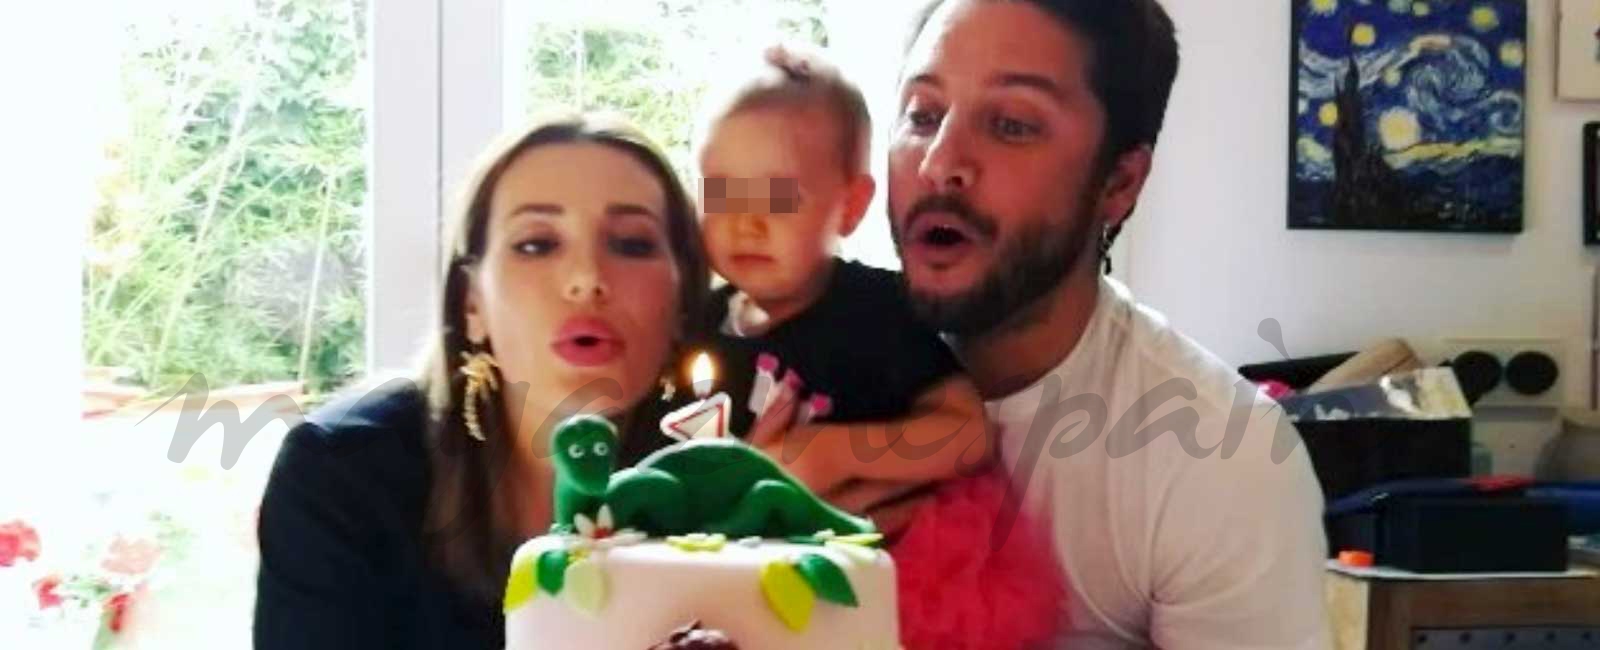 Manuel Carrasco celebra el primer cumpleaños de su pequeña Chloe